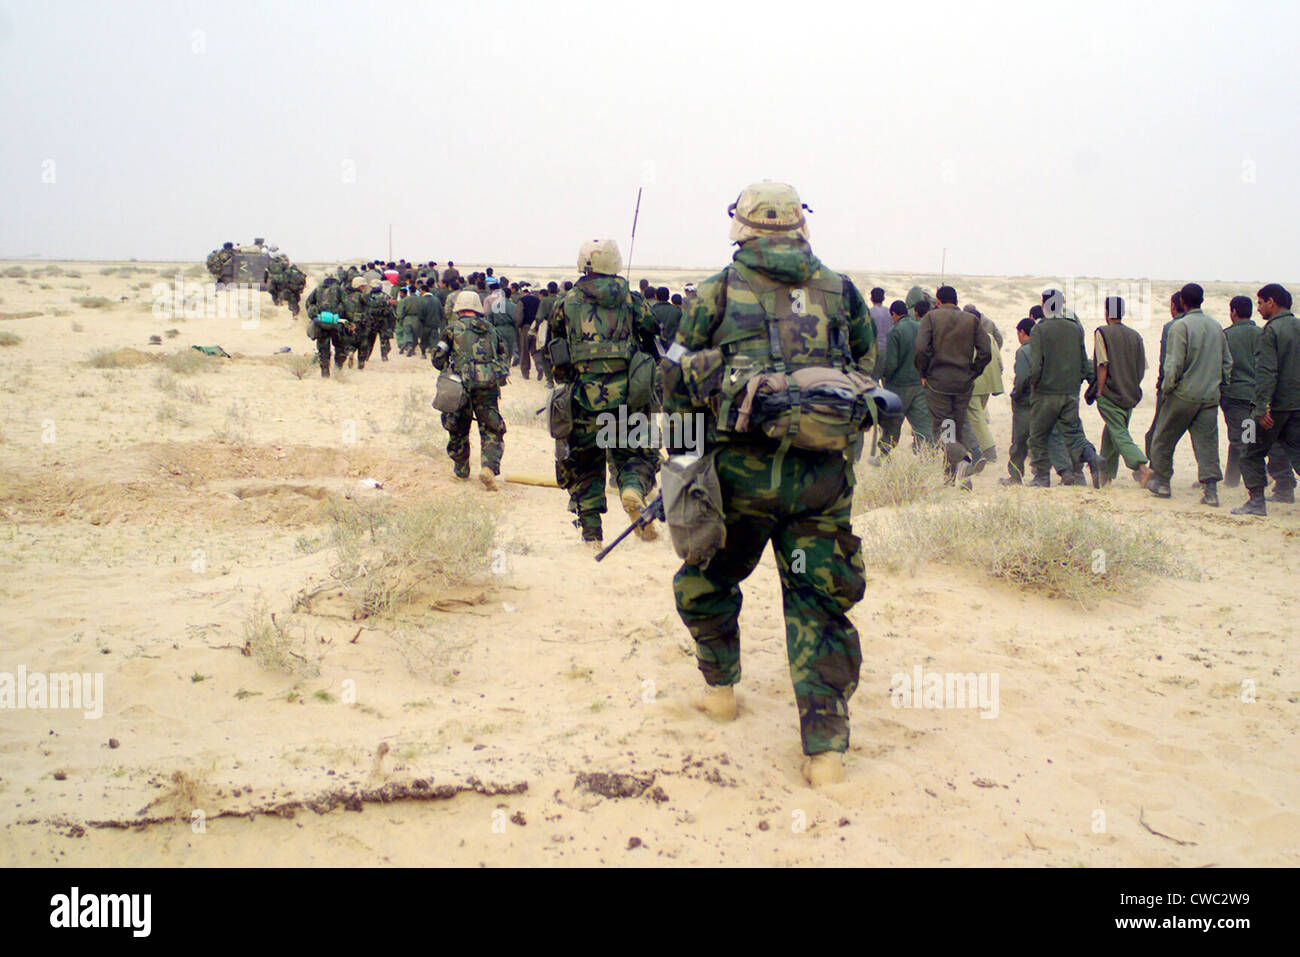 Stati Uniti Marines escort catturati al nemico di prigionieri di guerra ad una zona di tenuta nel deserto dell'Iraq il 21 marzo 2003 durante il funzionamento Foto Stock